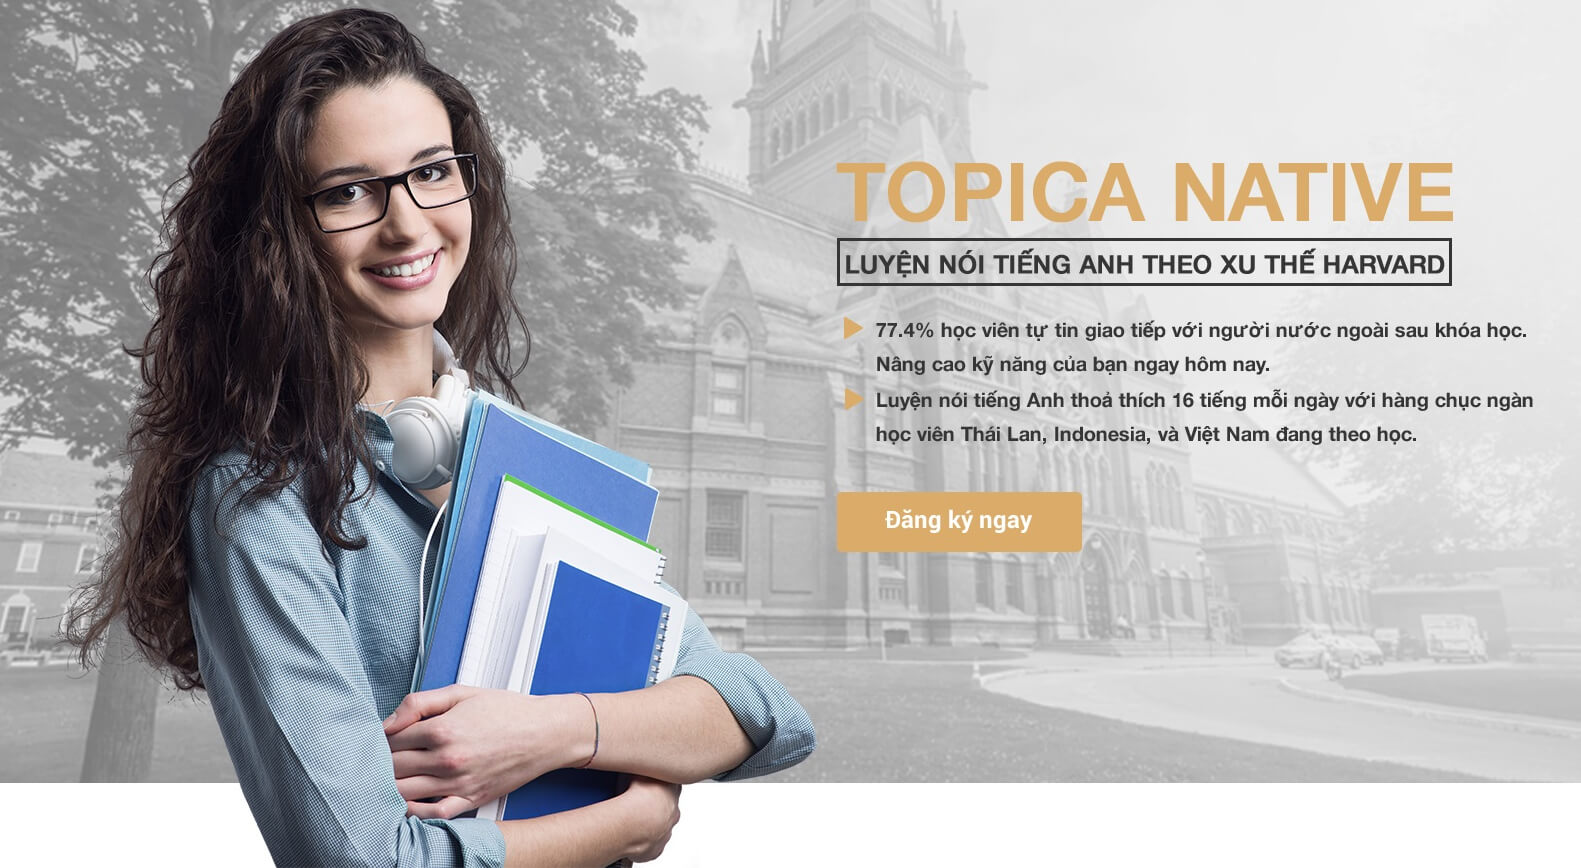 Có nên học tiếng Anh ở Topica Native không? Học phí bao nhiêu? Học có tốt không?